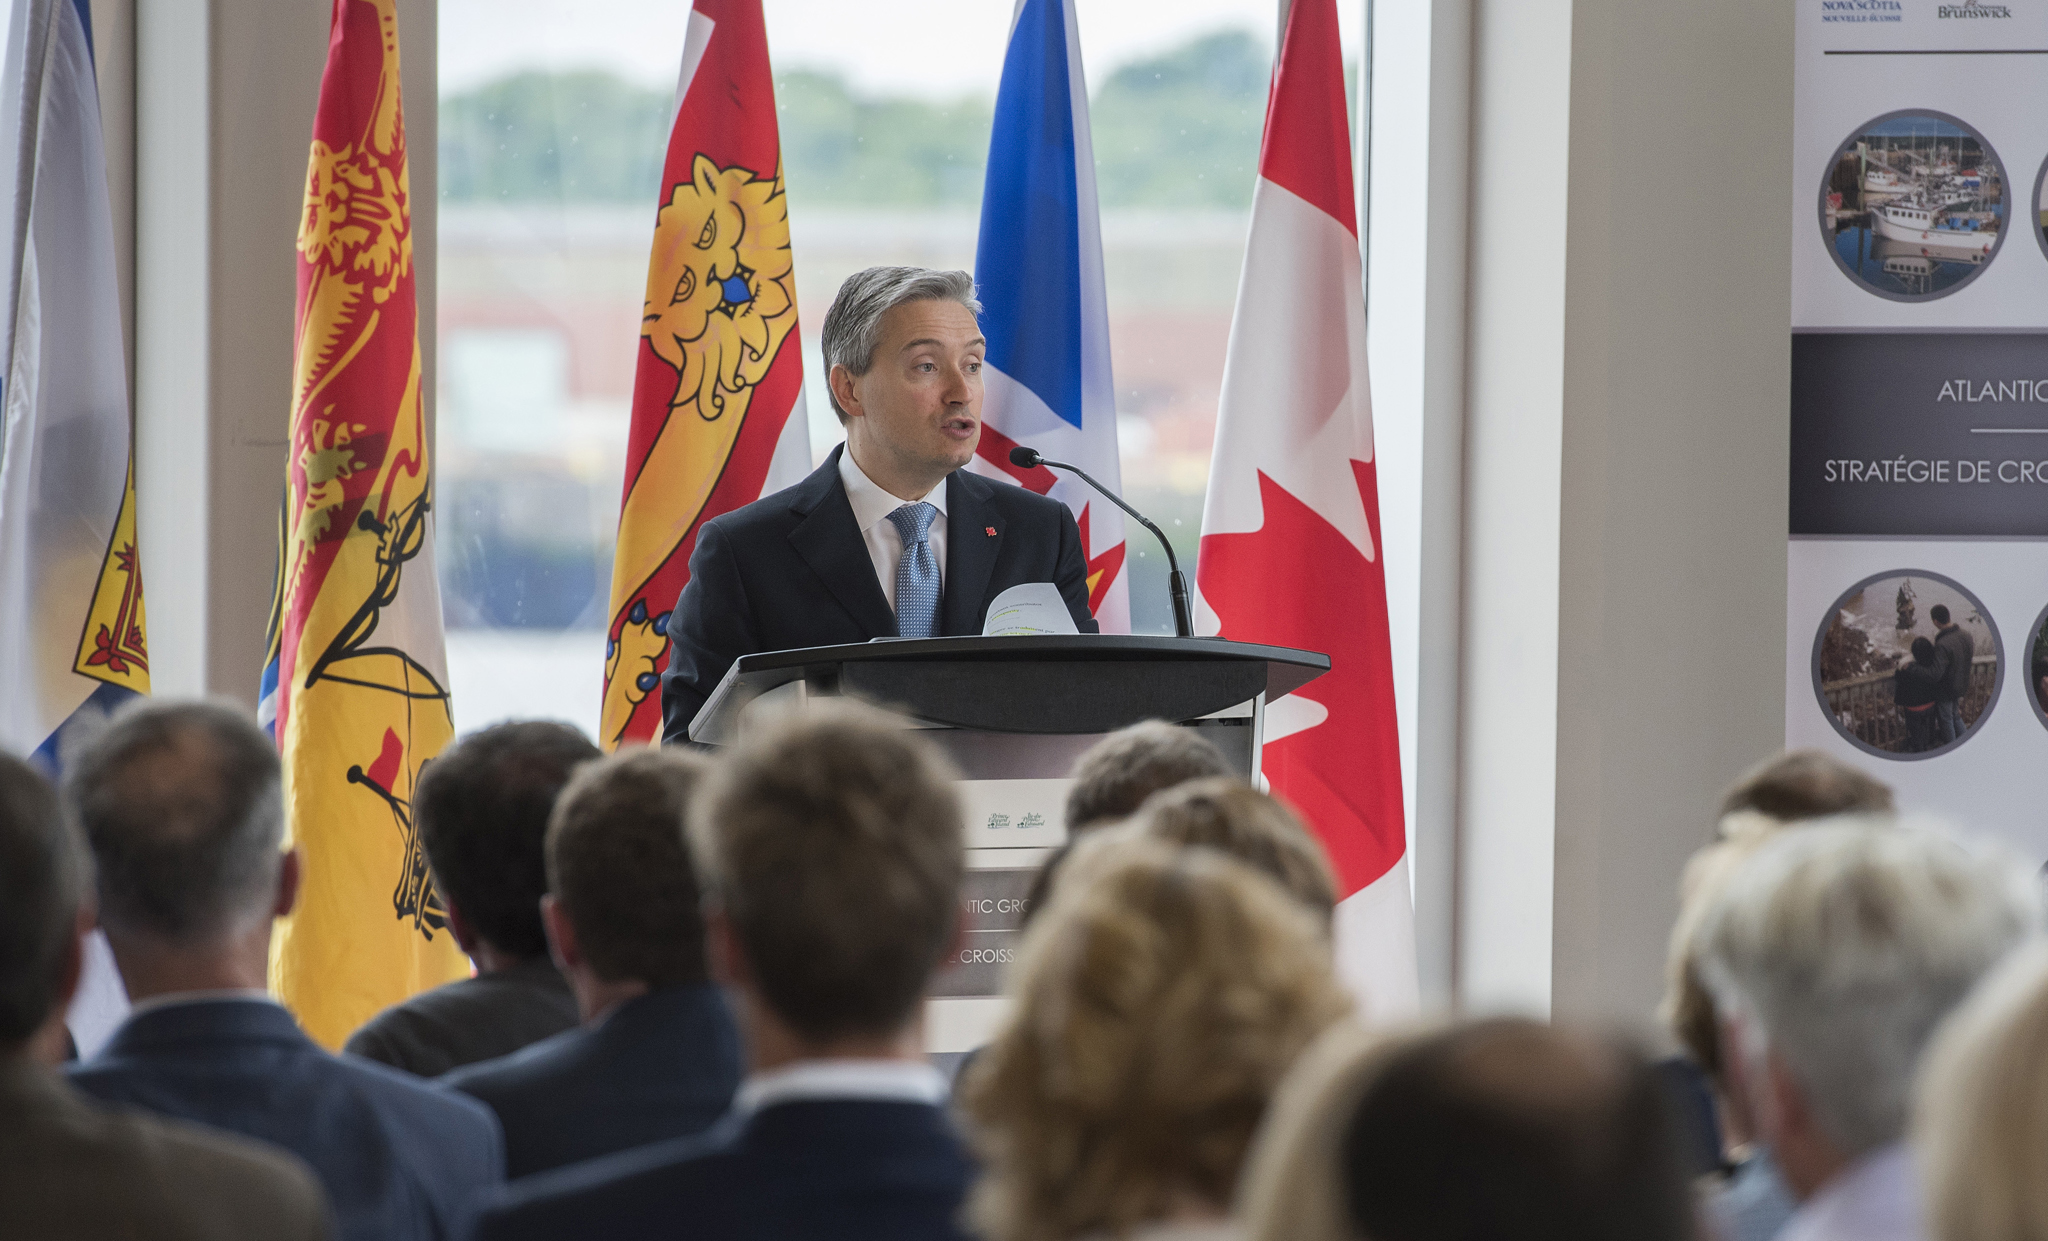 Le 4 juillet 2017 – L'honorable François-Philippe Champagne, ministre du Commerce international, s'adresse à des membres de la communauté d'affaires au lancement de la Stratégie de croissance du commerce et des investissements en Atlantique qui s'est déroulé à Saint John (Nouveau-Brunswick).